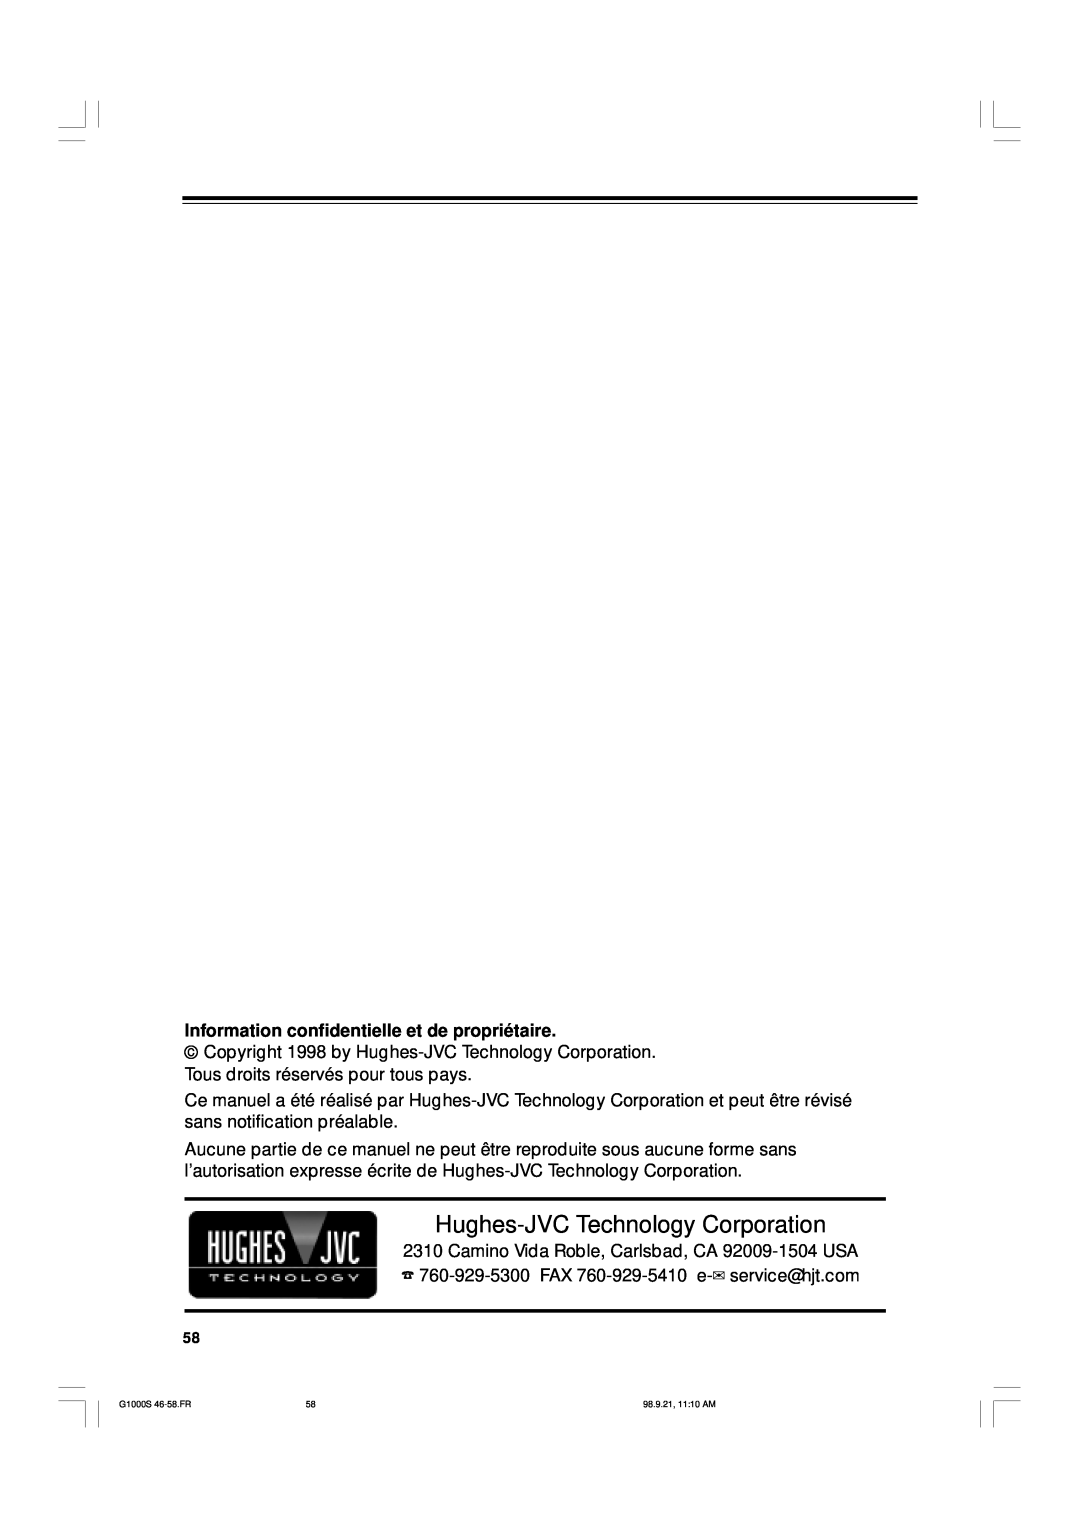 JVC G1000S manual Hughes-JVC Technology Corporation, Information confidentielle et de propriétaire 